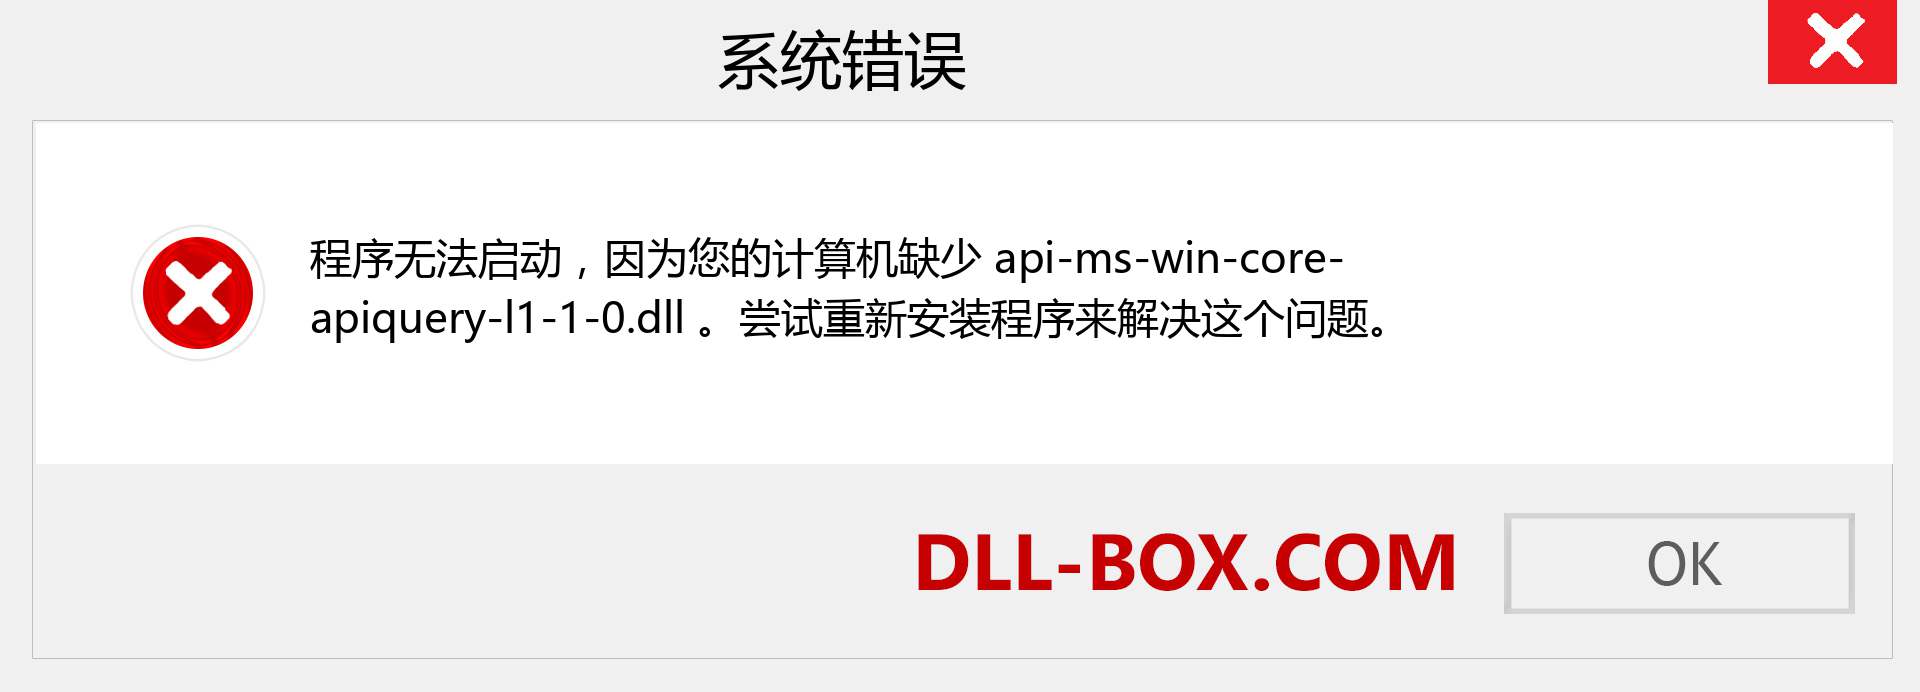 api-ms-win-core-apiquery-l1-1-0.dll 文件丢失？。 适用于 Windows 7、8、10 的下载 - 修复 Windows、照片、图像上的 api-ms-win-core-apiquery-l1-1-0 dll 丢失错误